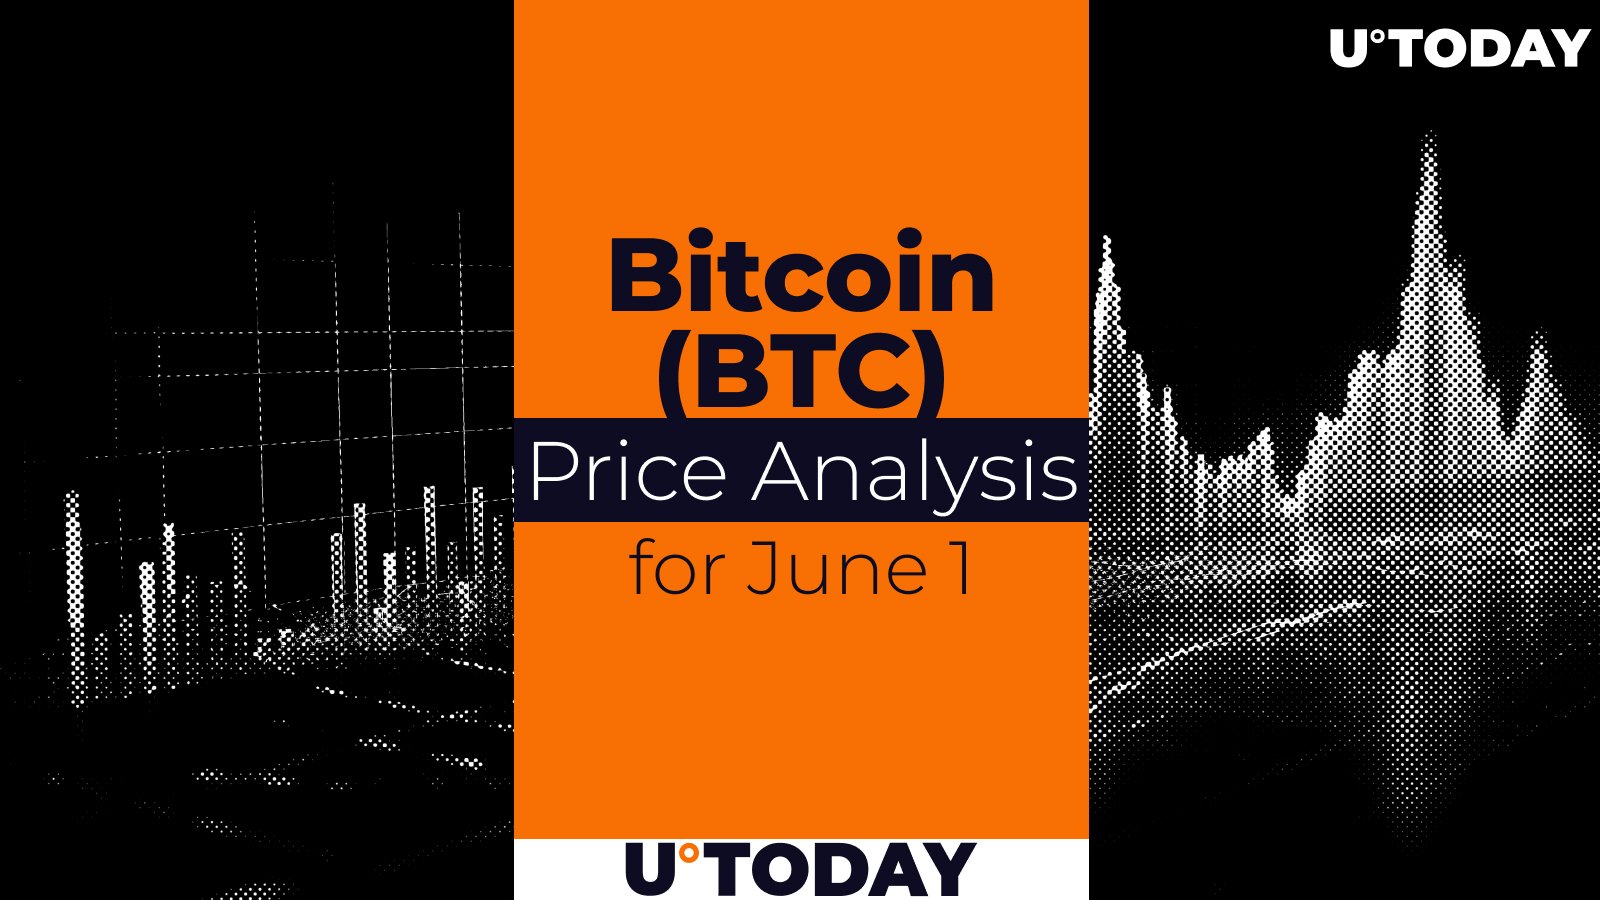 Bitcoin (BTC) Price Prediction for June 1